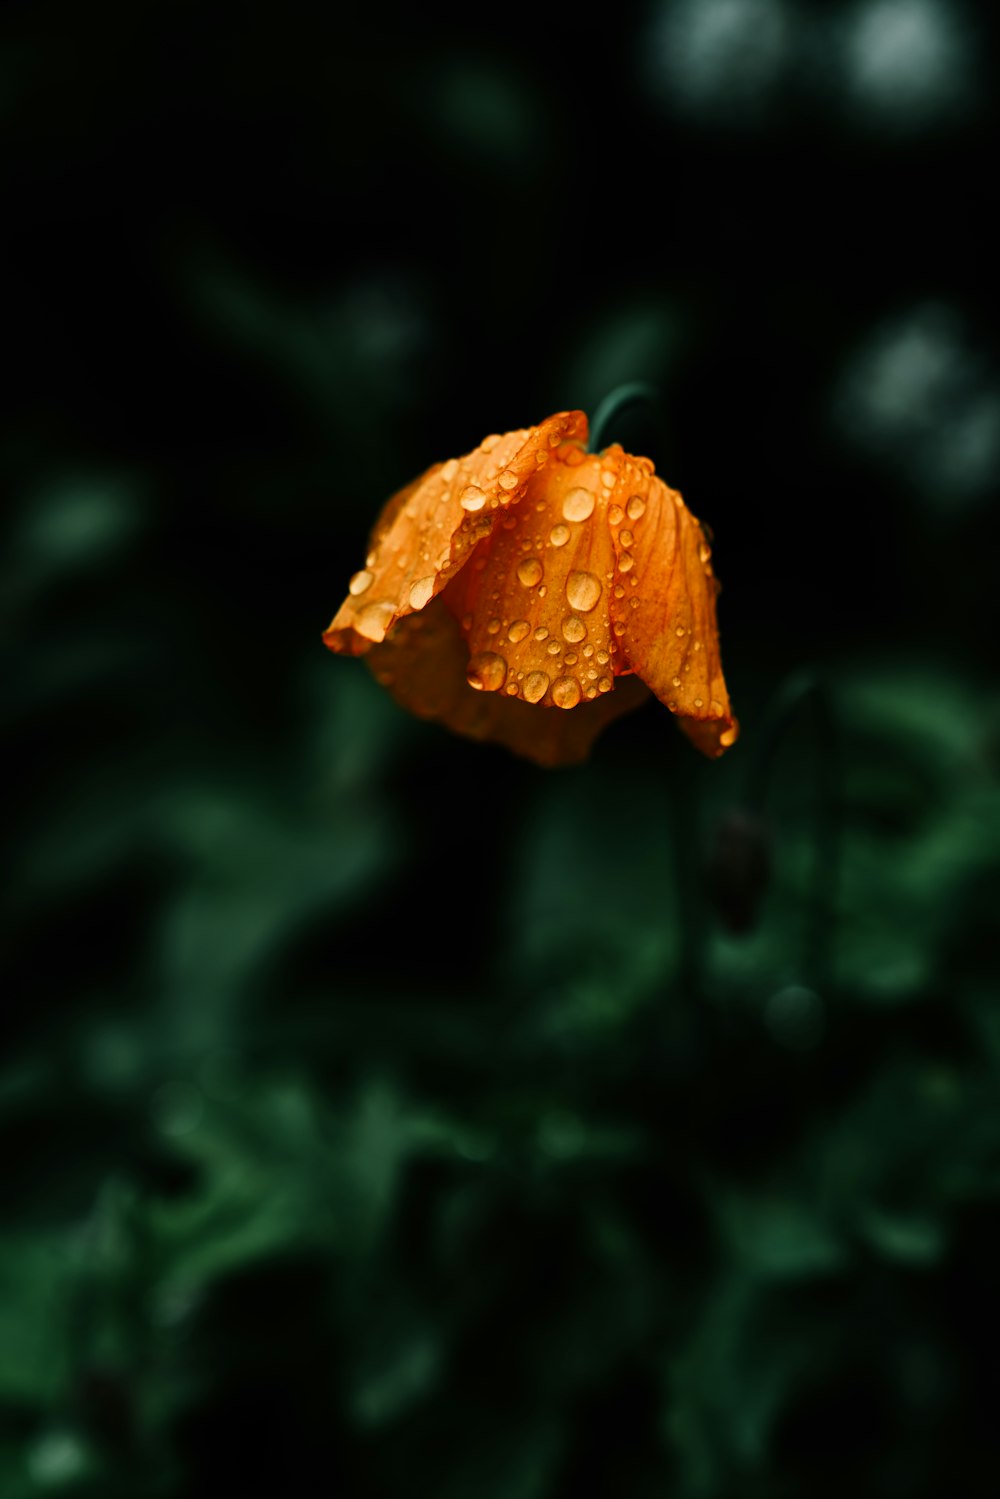 オレンジ色の花の浅い焦点写真